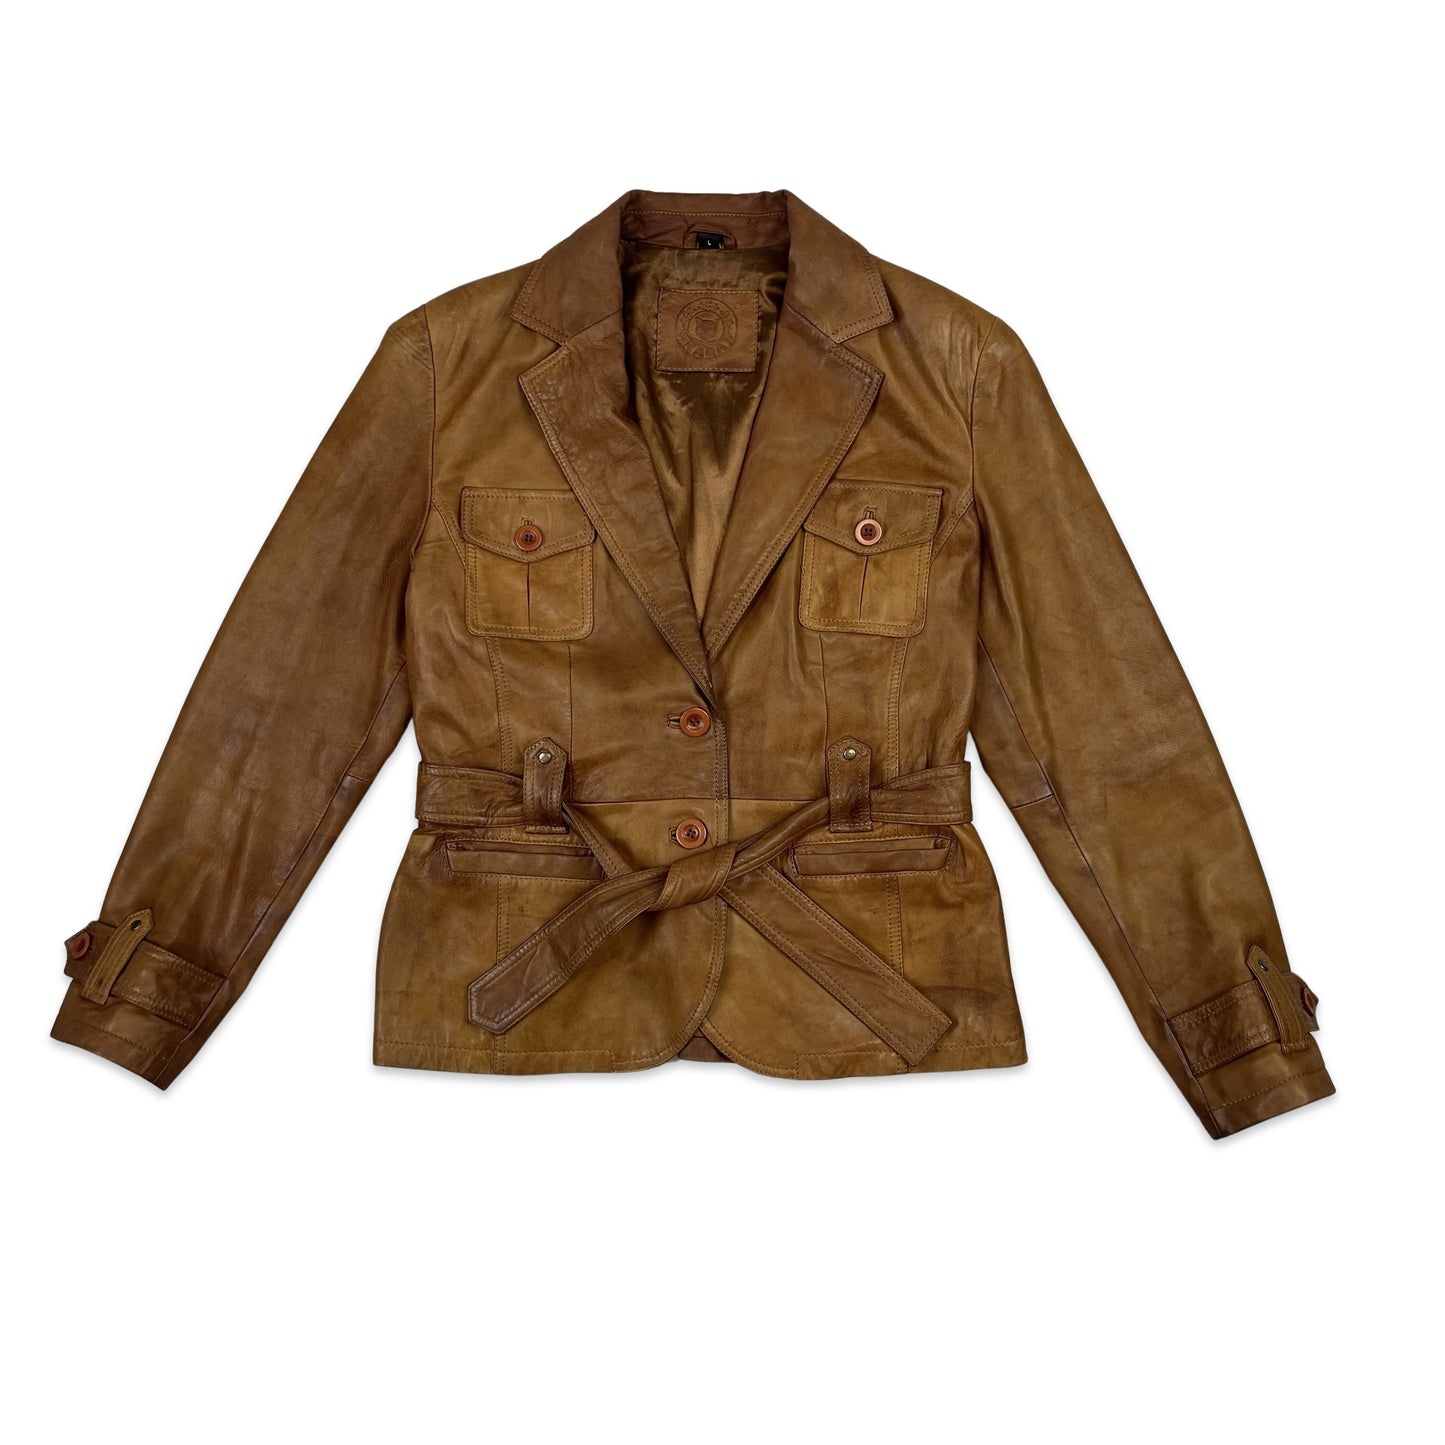 Vintage Short Leather Jacket Belted Tan 10 12